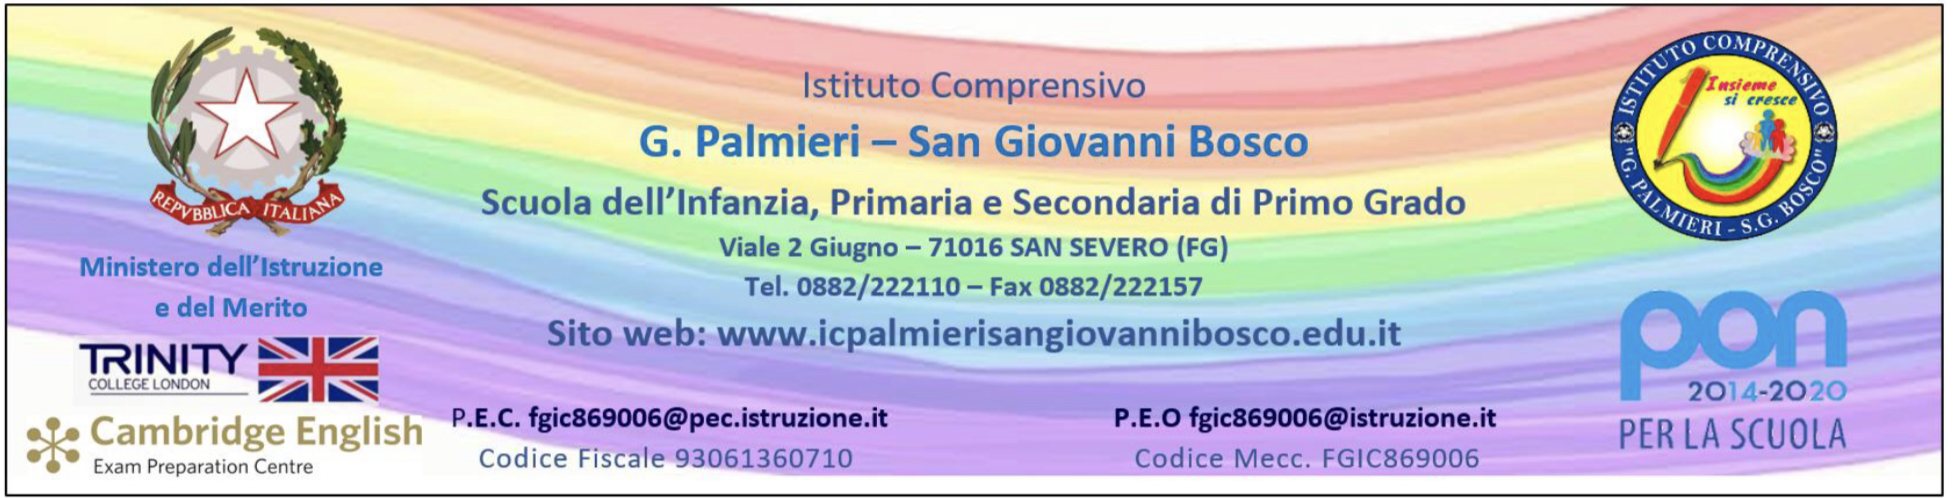 Account istituzionali per tutti gli utenti dell’I.C. “Palmieri – San Giovanni Bosco”  a.s. 2021/2022.